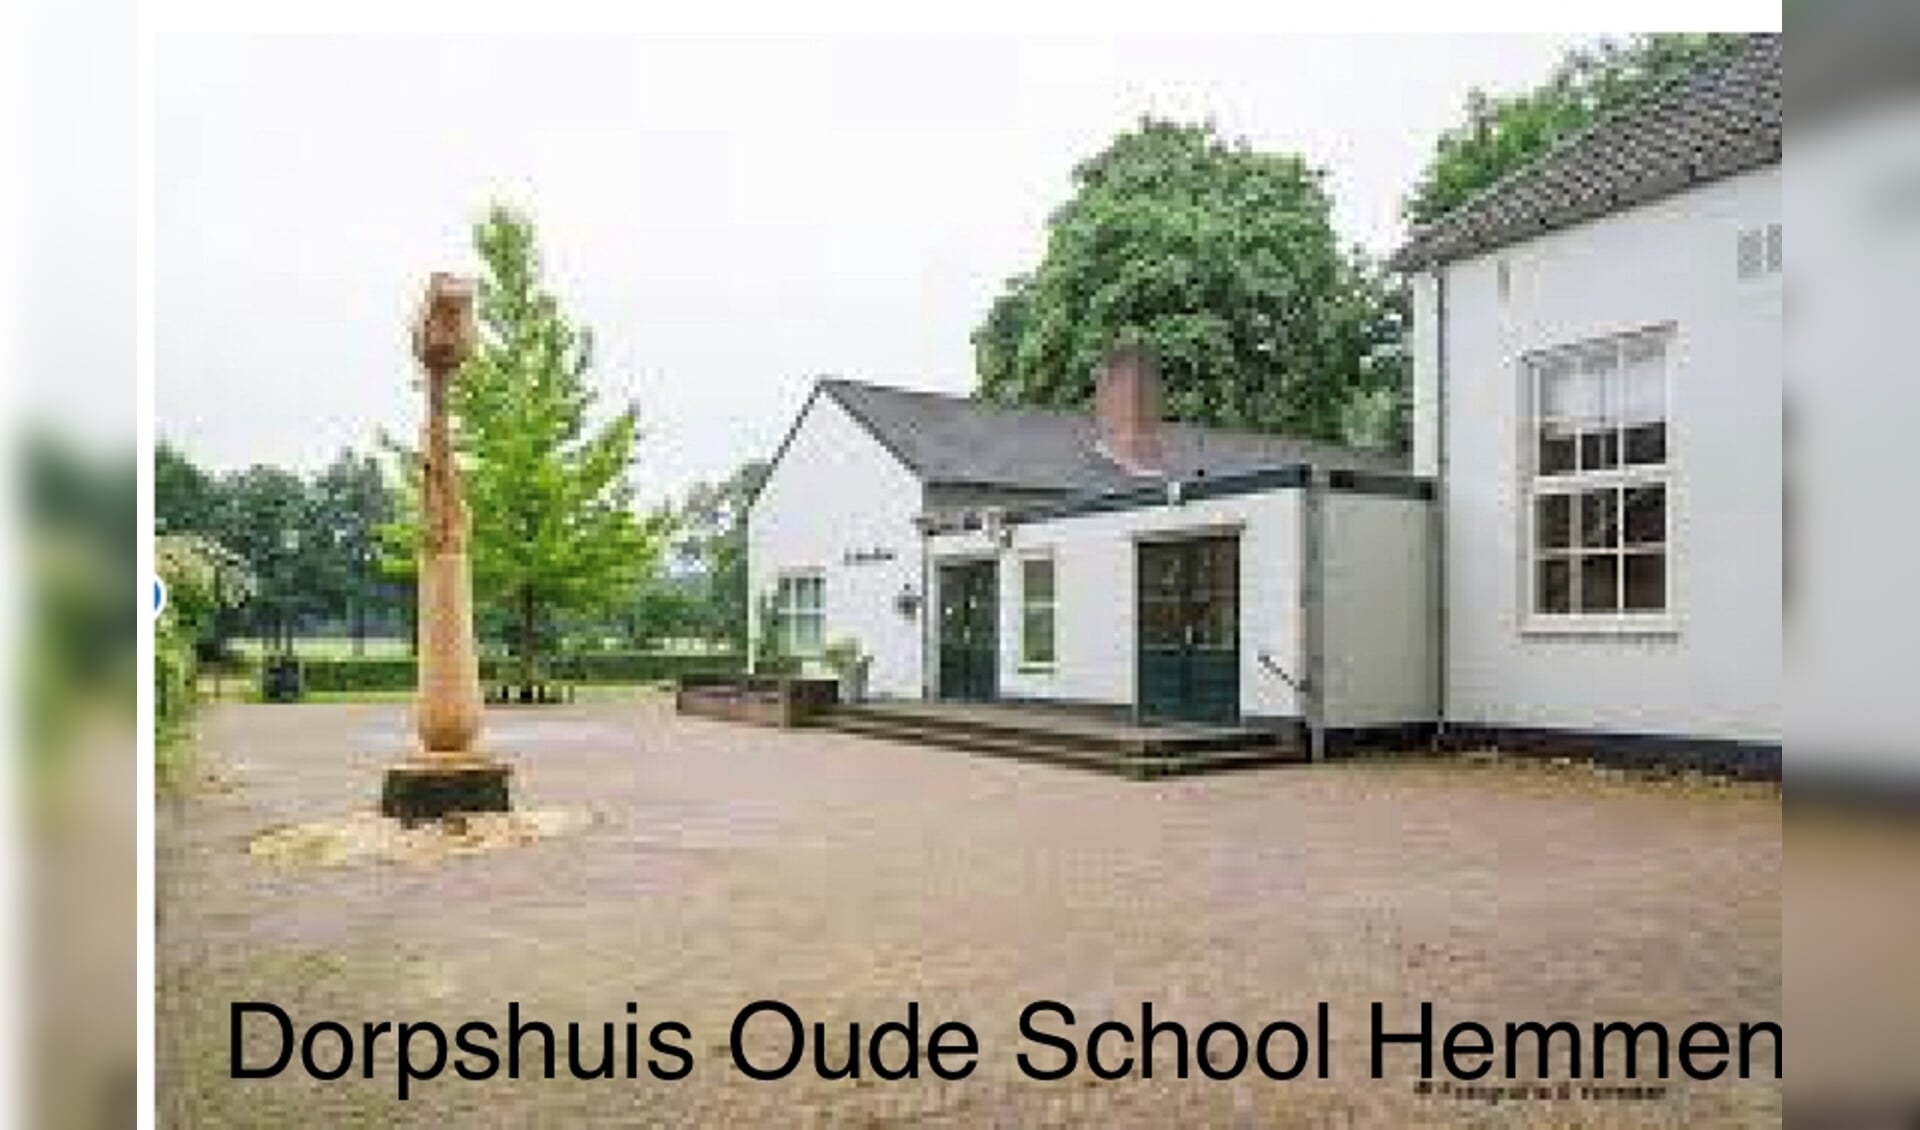 Dorpshuis Oude School Hemmen. (foto: Gerrit Vermeer, bestuurslid DVH)